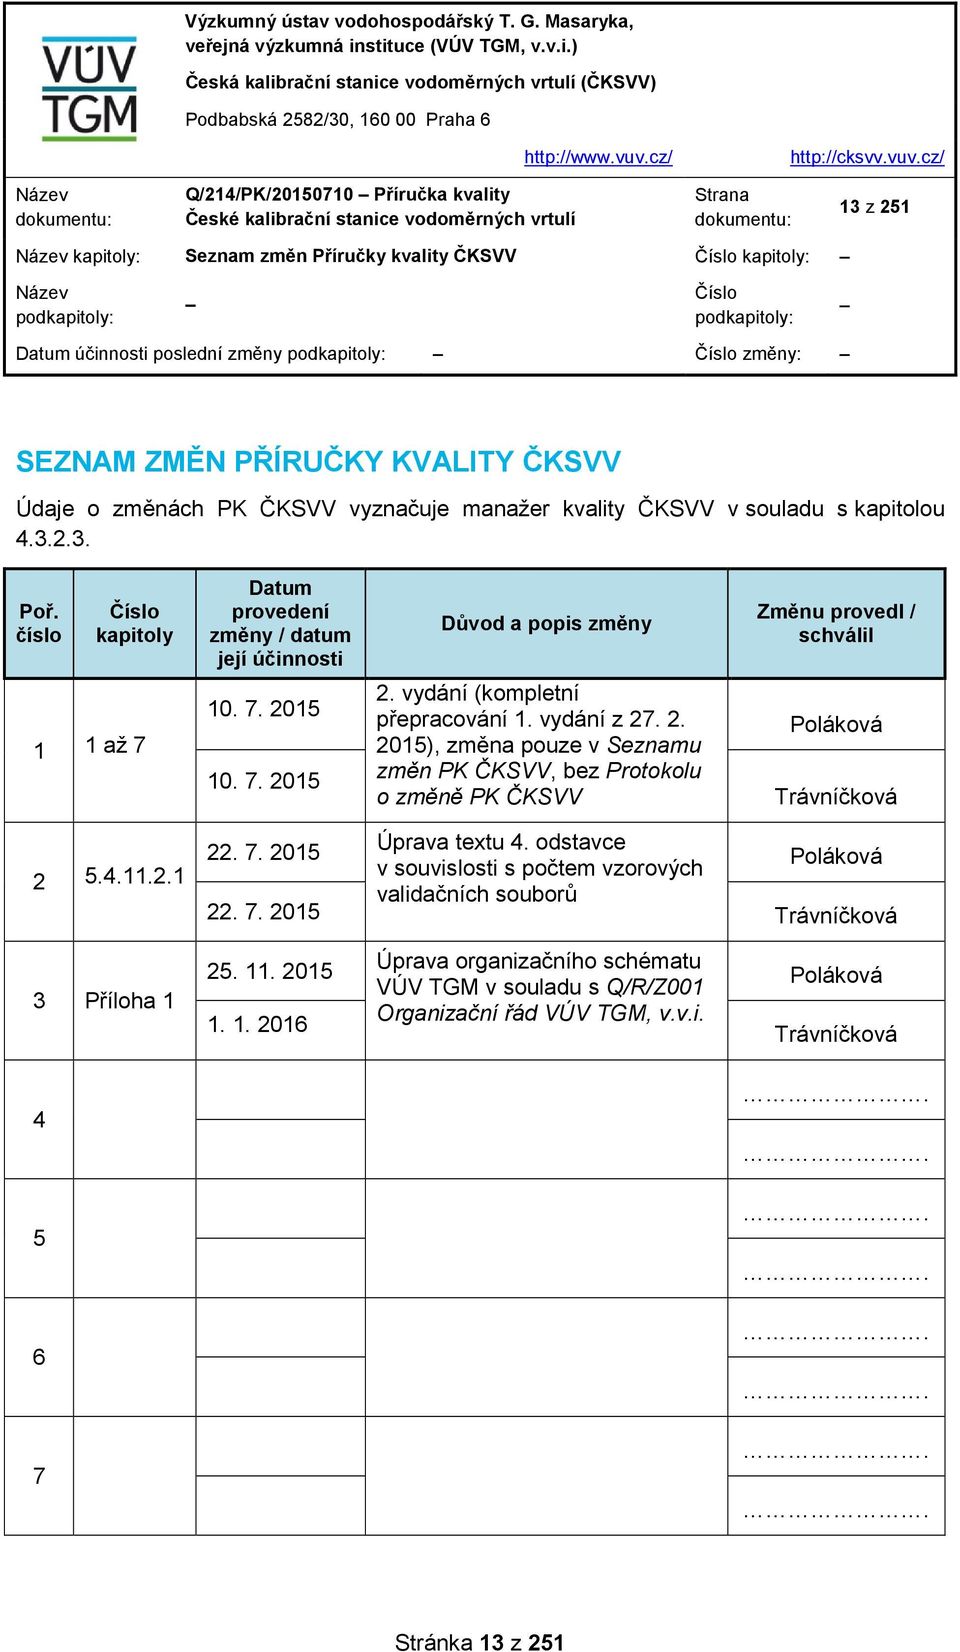 15 10. 7. 2015 Důvod a popis změny 2. vydání (kompletní přepracování 1. vydání z 27. 2. 2015), změna pouze v Seznamu změn PK ČKSVV, bez Protokolu o změně PK ČKSVV Změnu provedl / schválil Poláková Trávníčková 2 5.